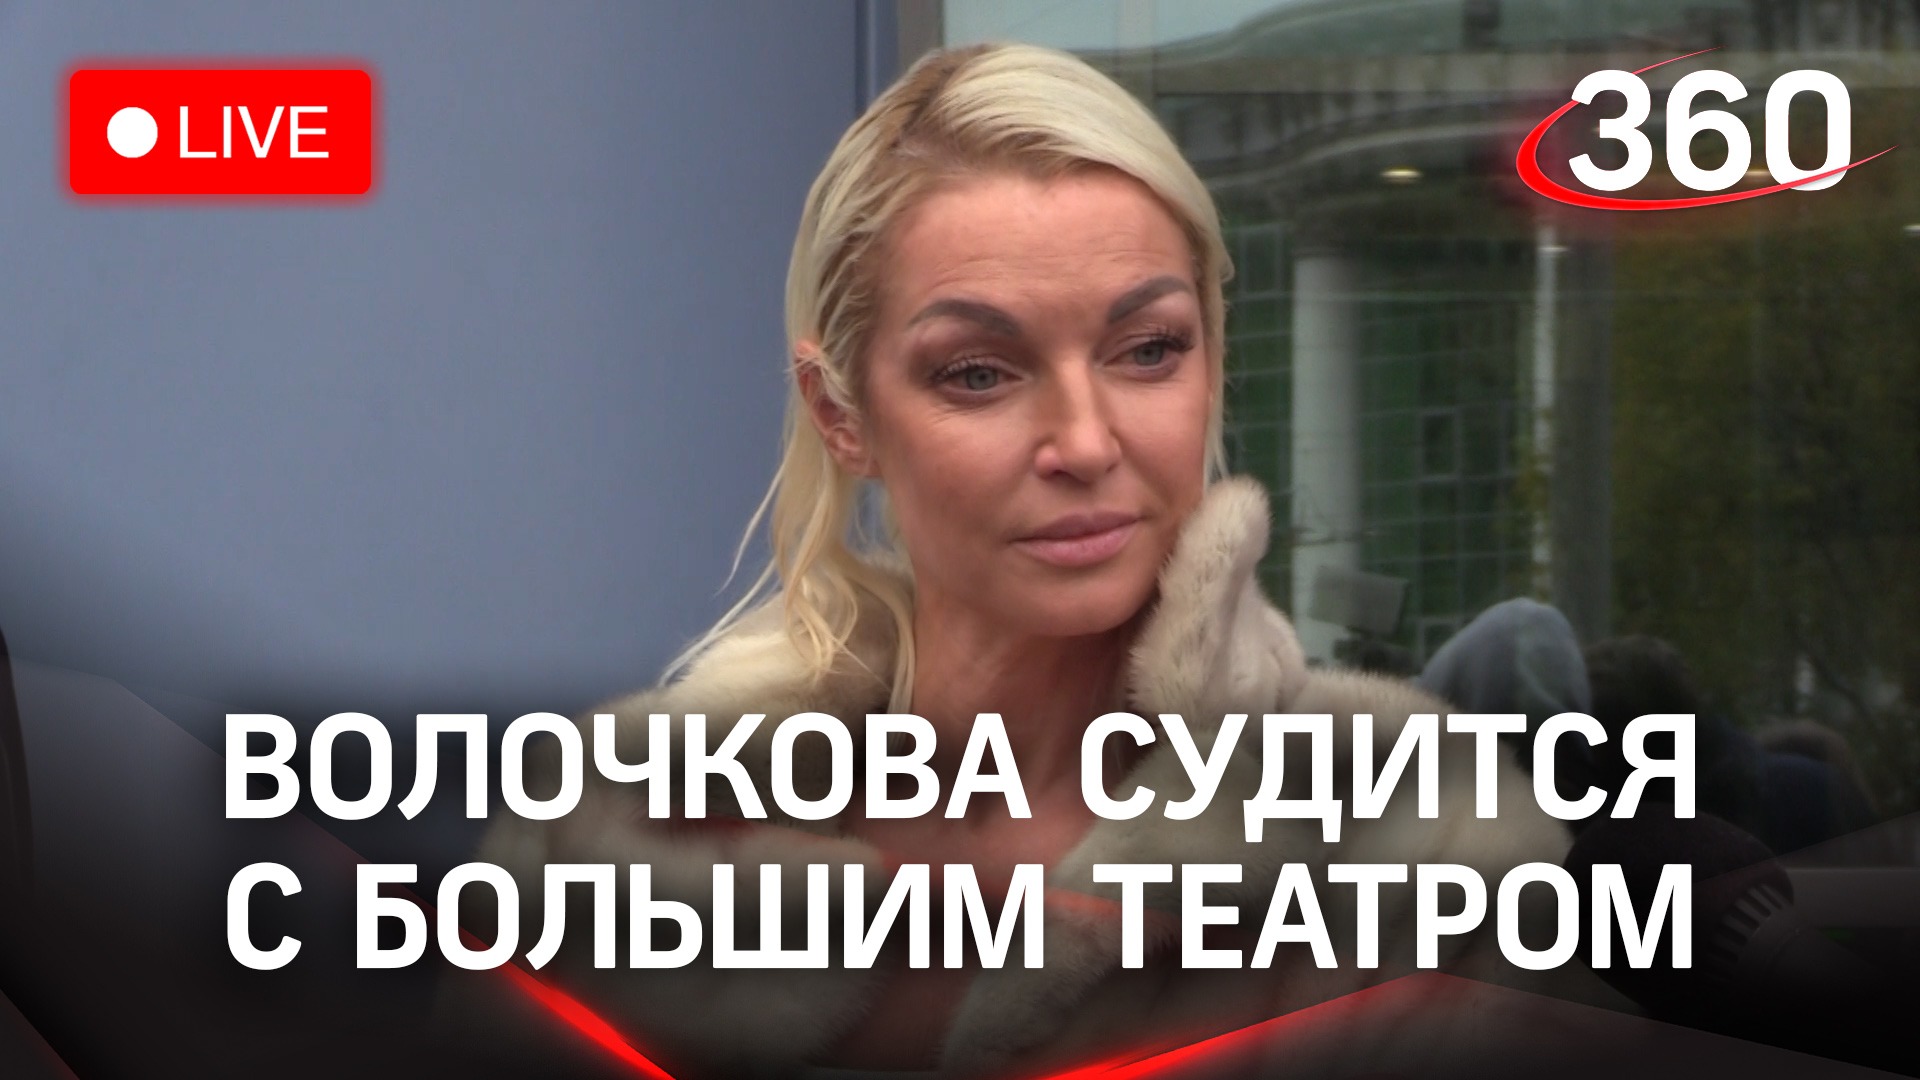 Анастасия Волочкова судится с Большим театром в Тверском суде. Прямая трансляция